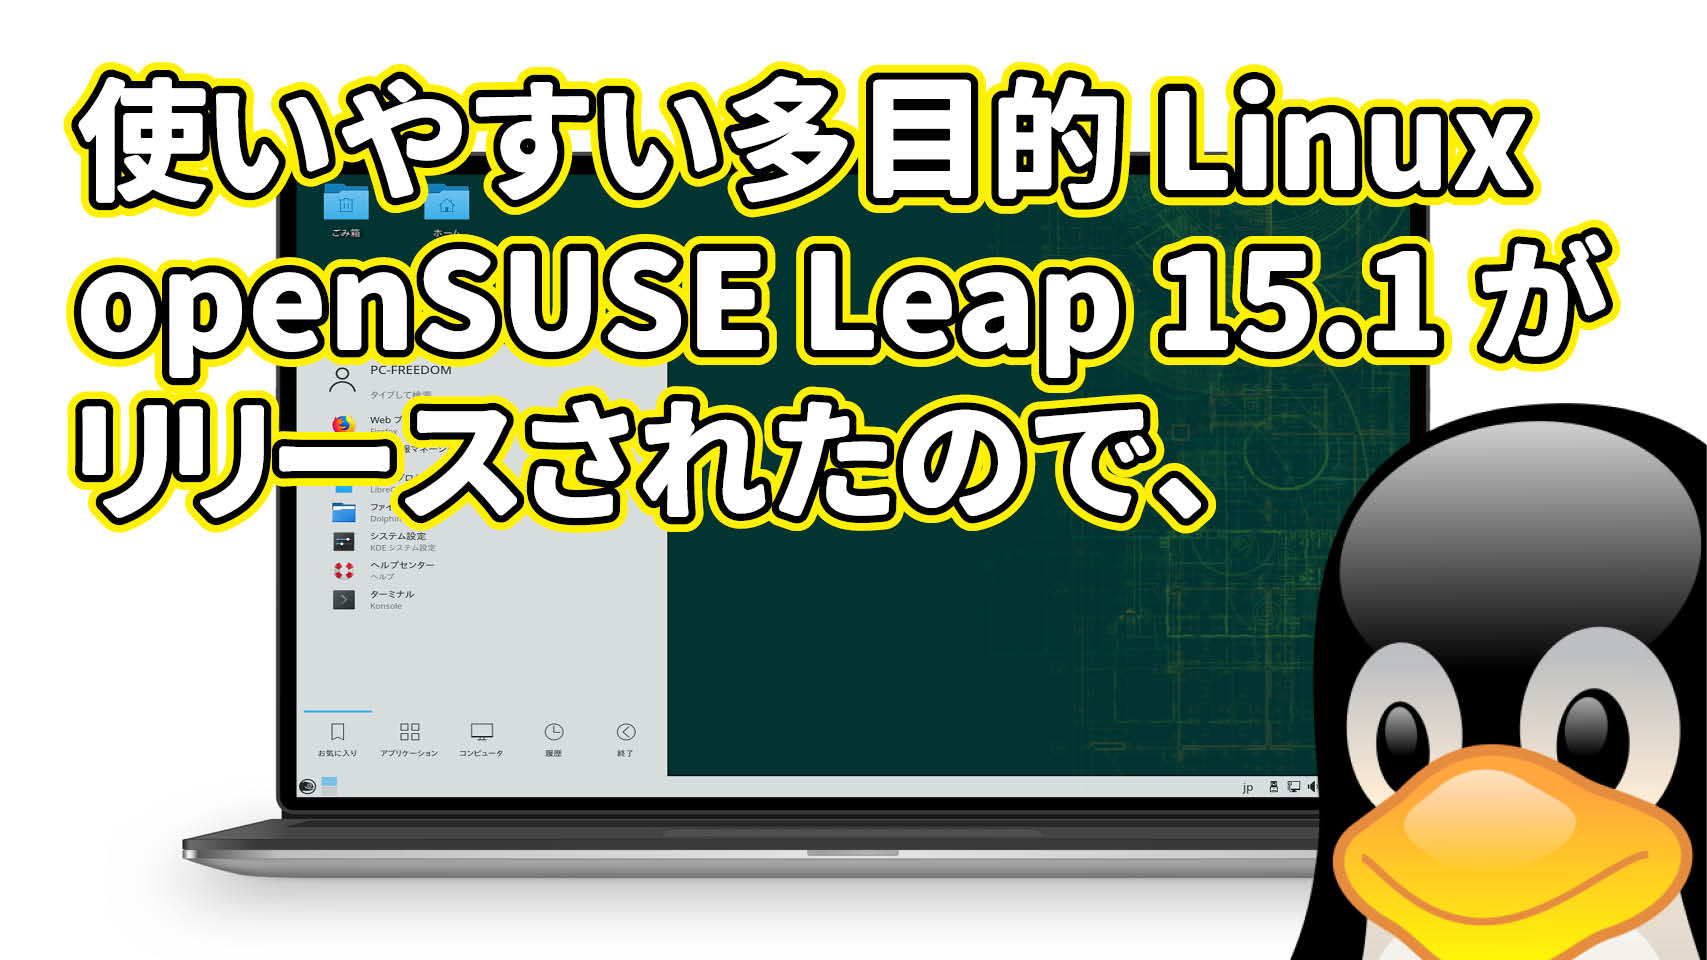 使いやすい多目的 Linux openSUSE Leap 15.1 がリリースされたので、